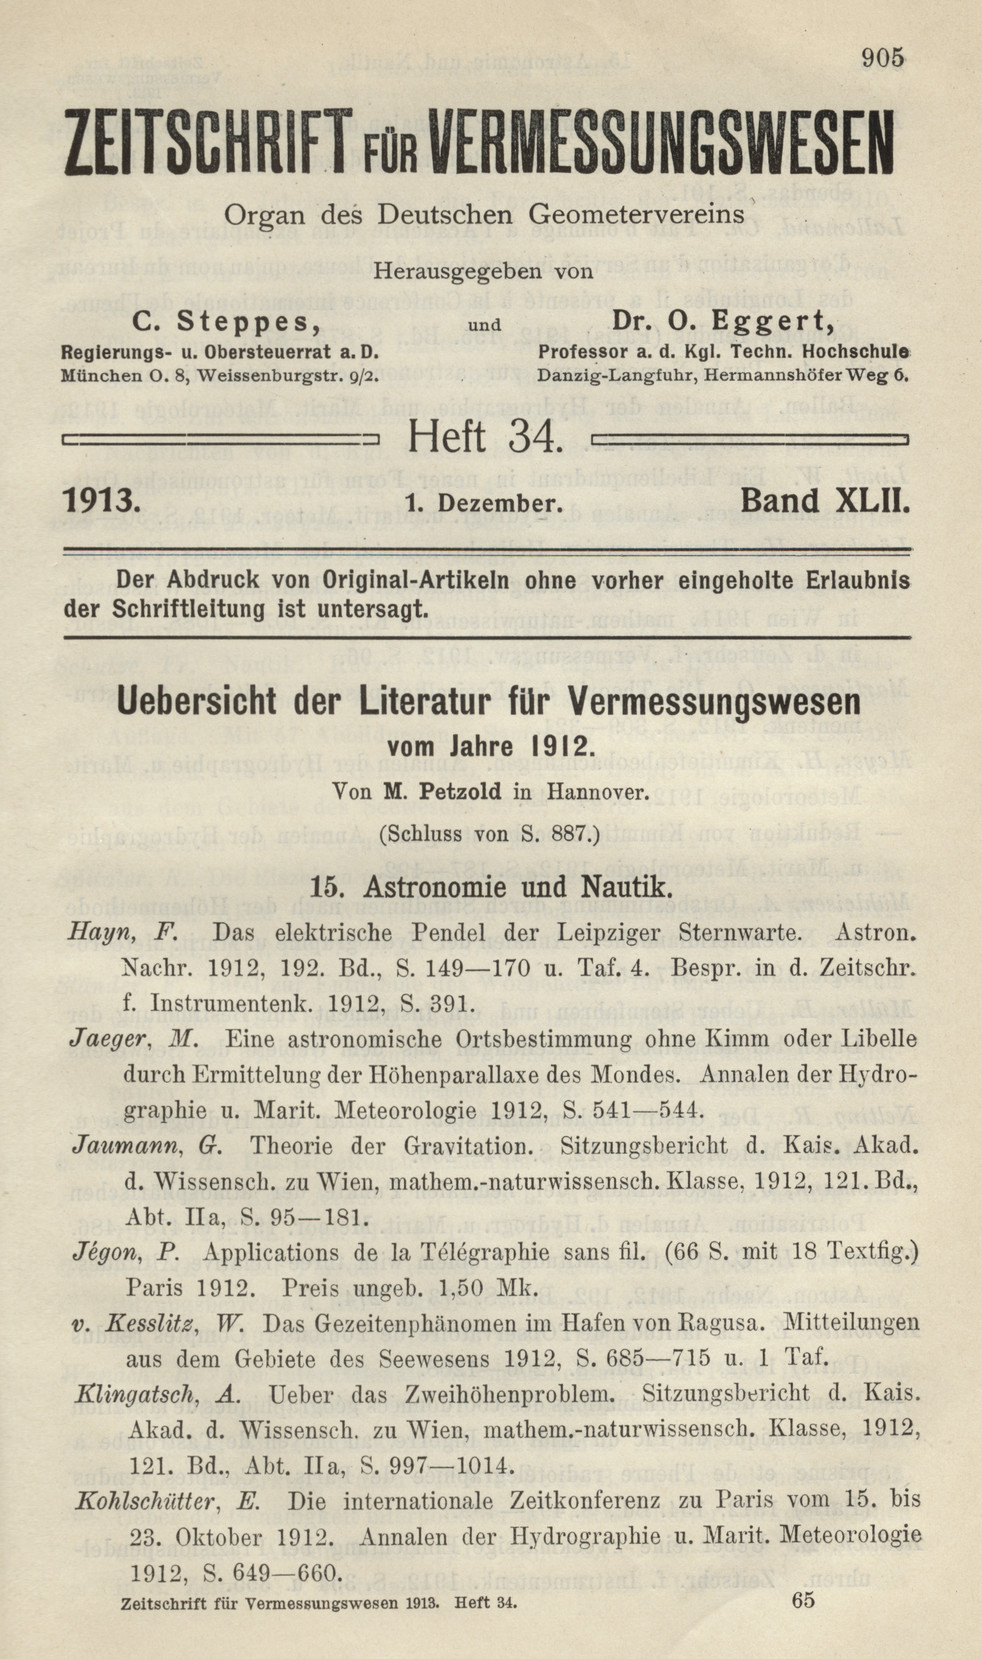 Zeitschrift für Vermessungswesen, Heft 34, Band XLII